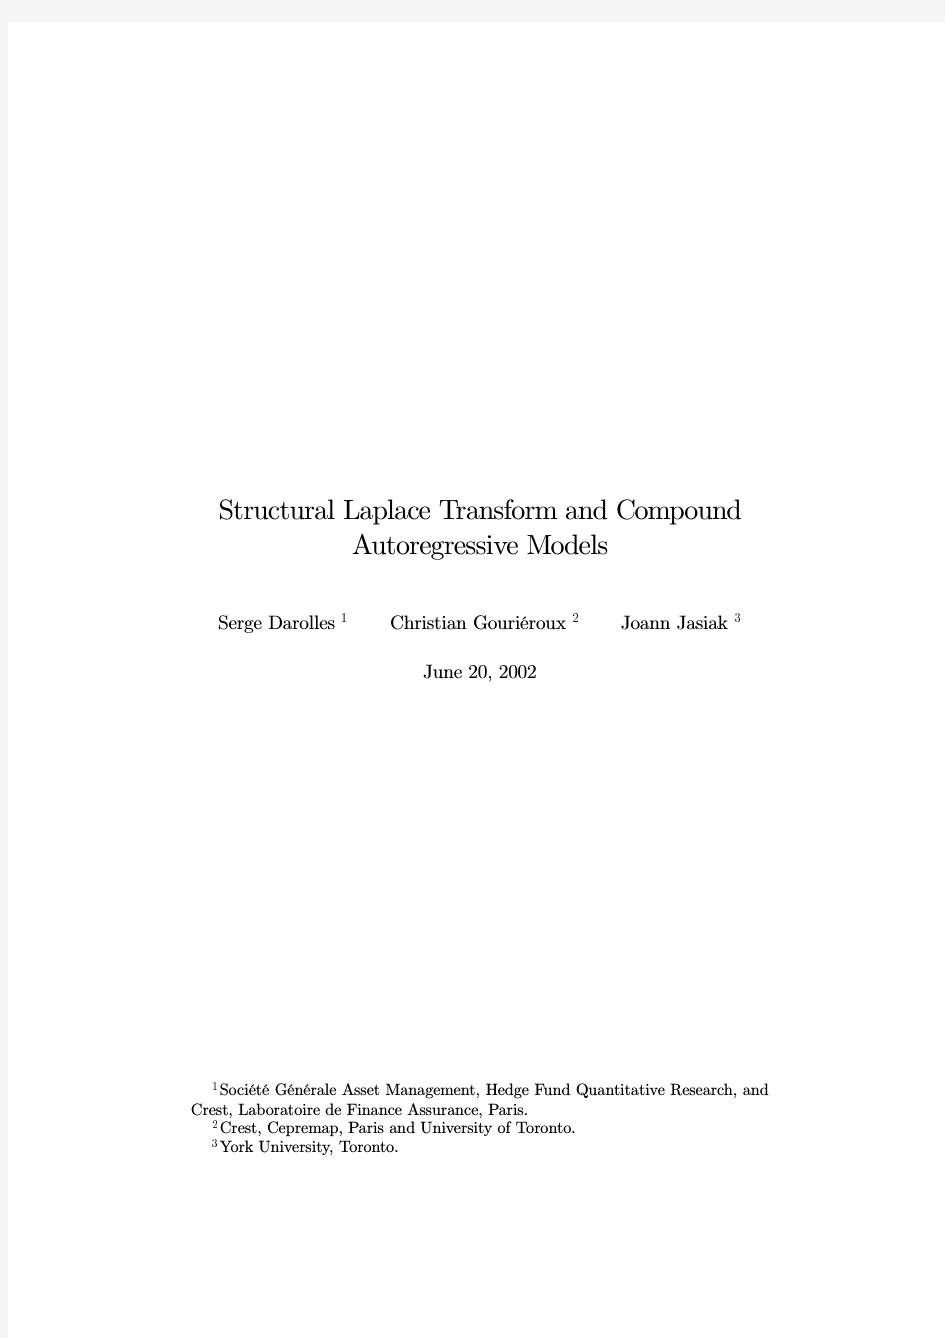 2002), Structural Laplace transforms and compound autoregressive models, preprint